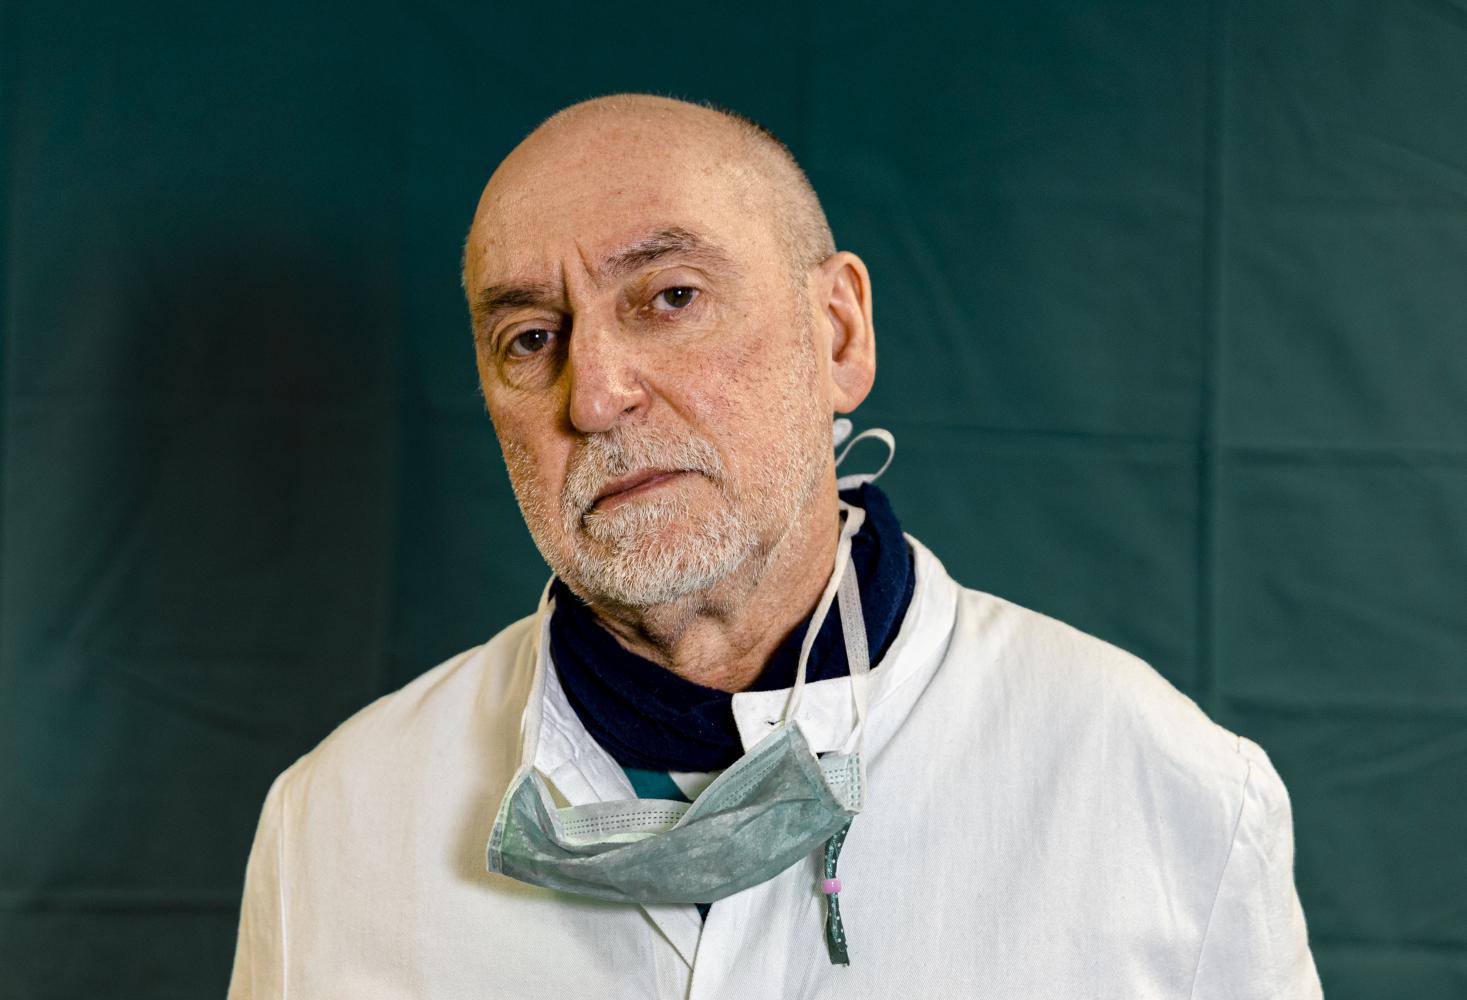 Gabriele Tomasoni, 65, Ärztlicher Leiter der Intensivstation im Krankenhaus "Spedali Civili de Brescia" in Brescia